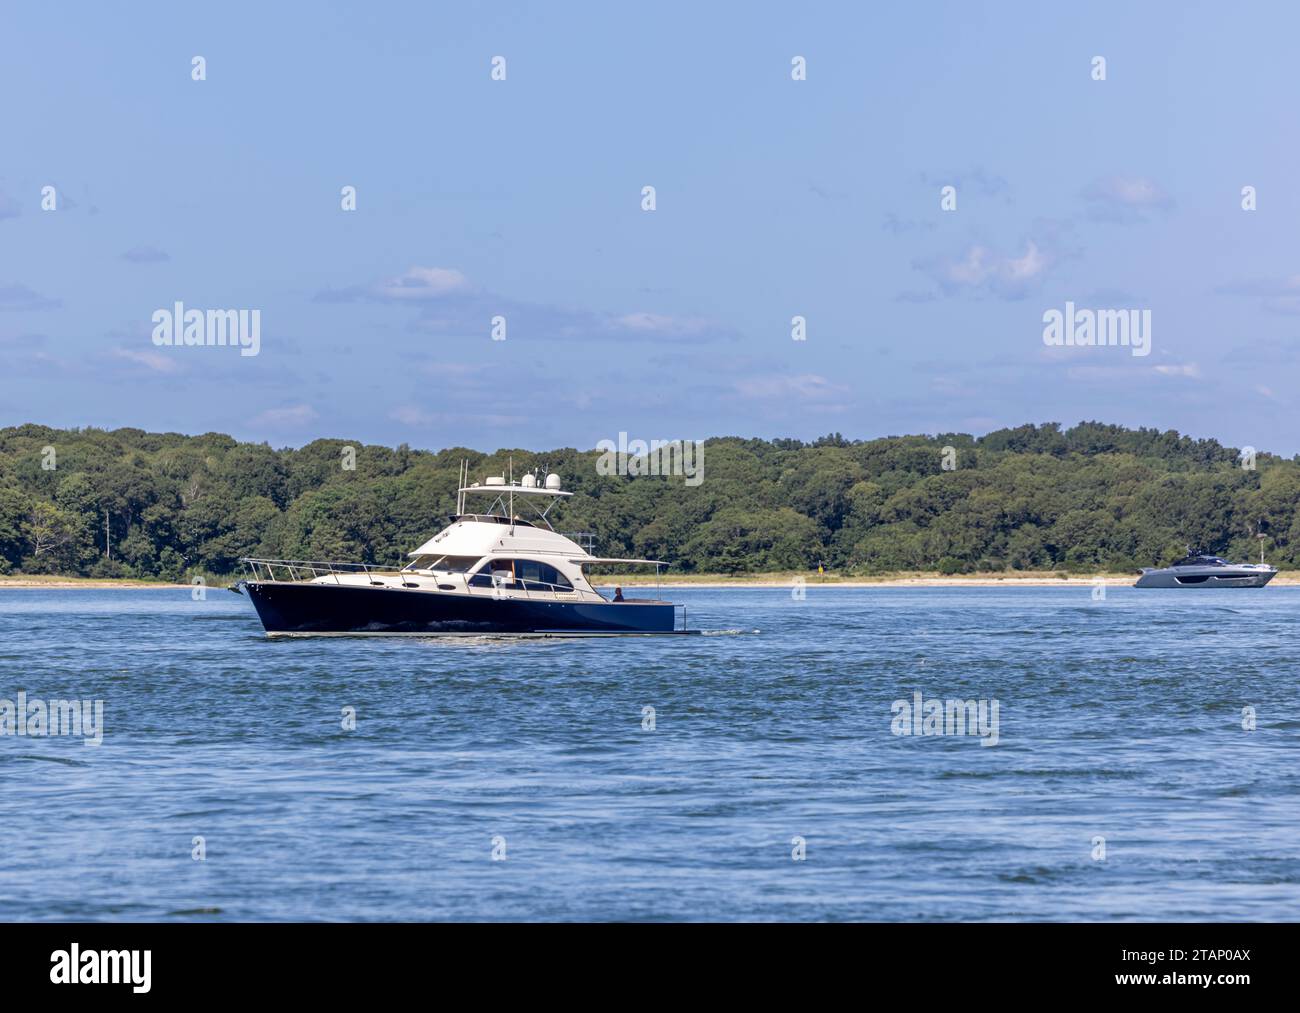 due costosi yacht a motore al largo della costa di shelter island, new york Foto Stock